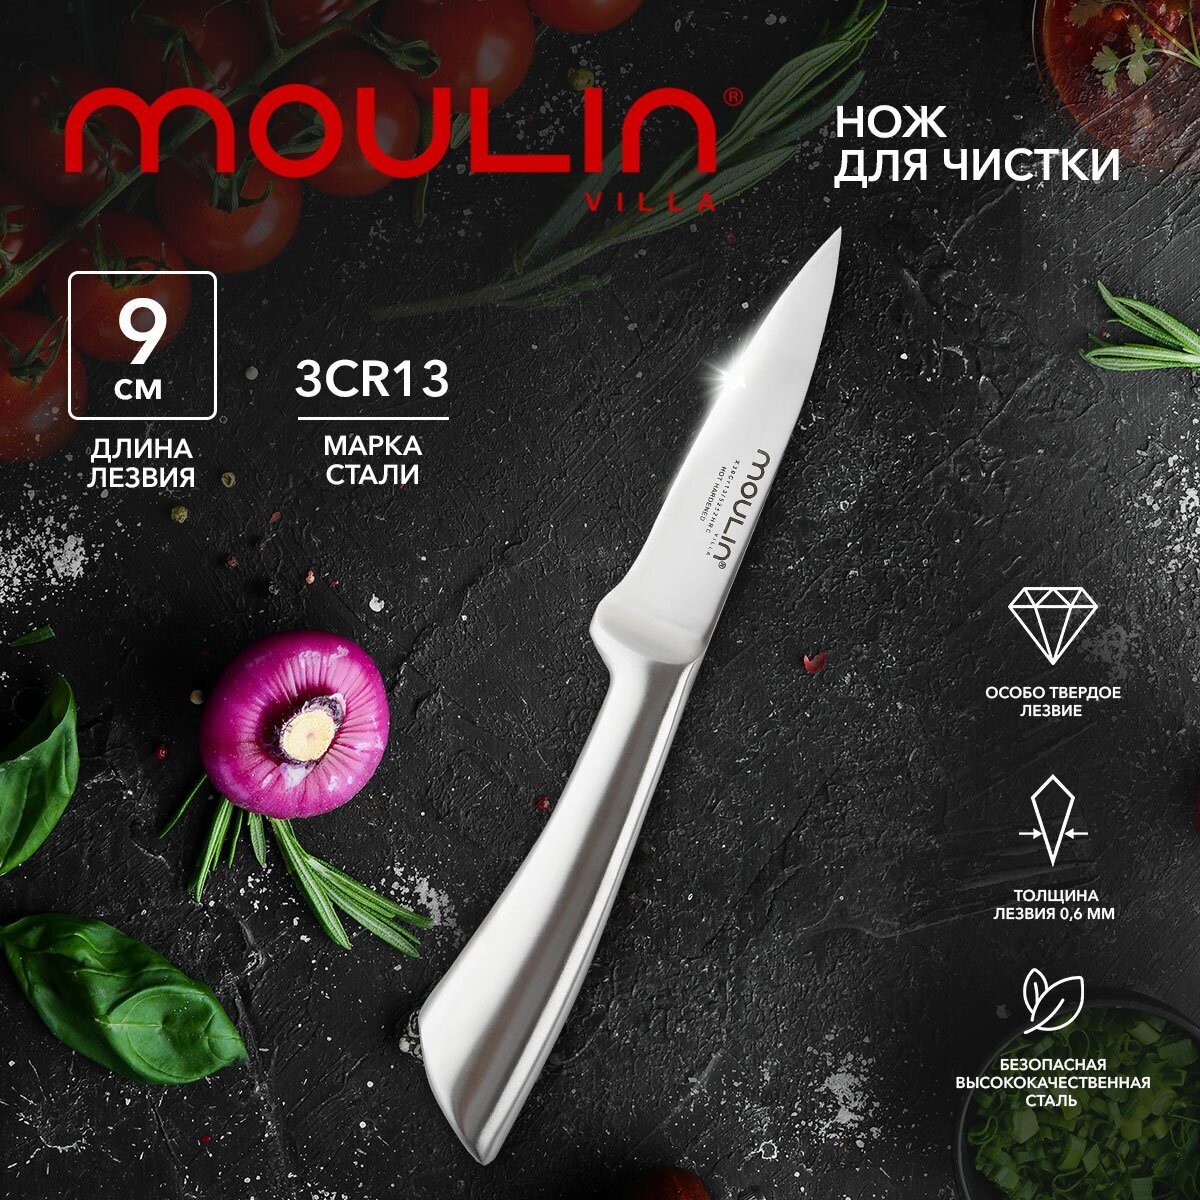 Нож сантоку кухонный 18 см Moulin Villa Lion MLNS-18 / нож для измельчения и нарезки мяса рыбы овощей фруктов